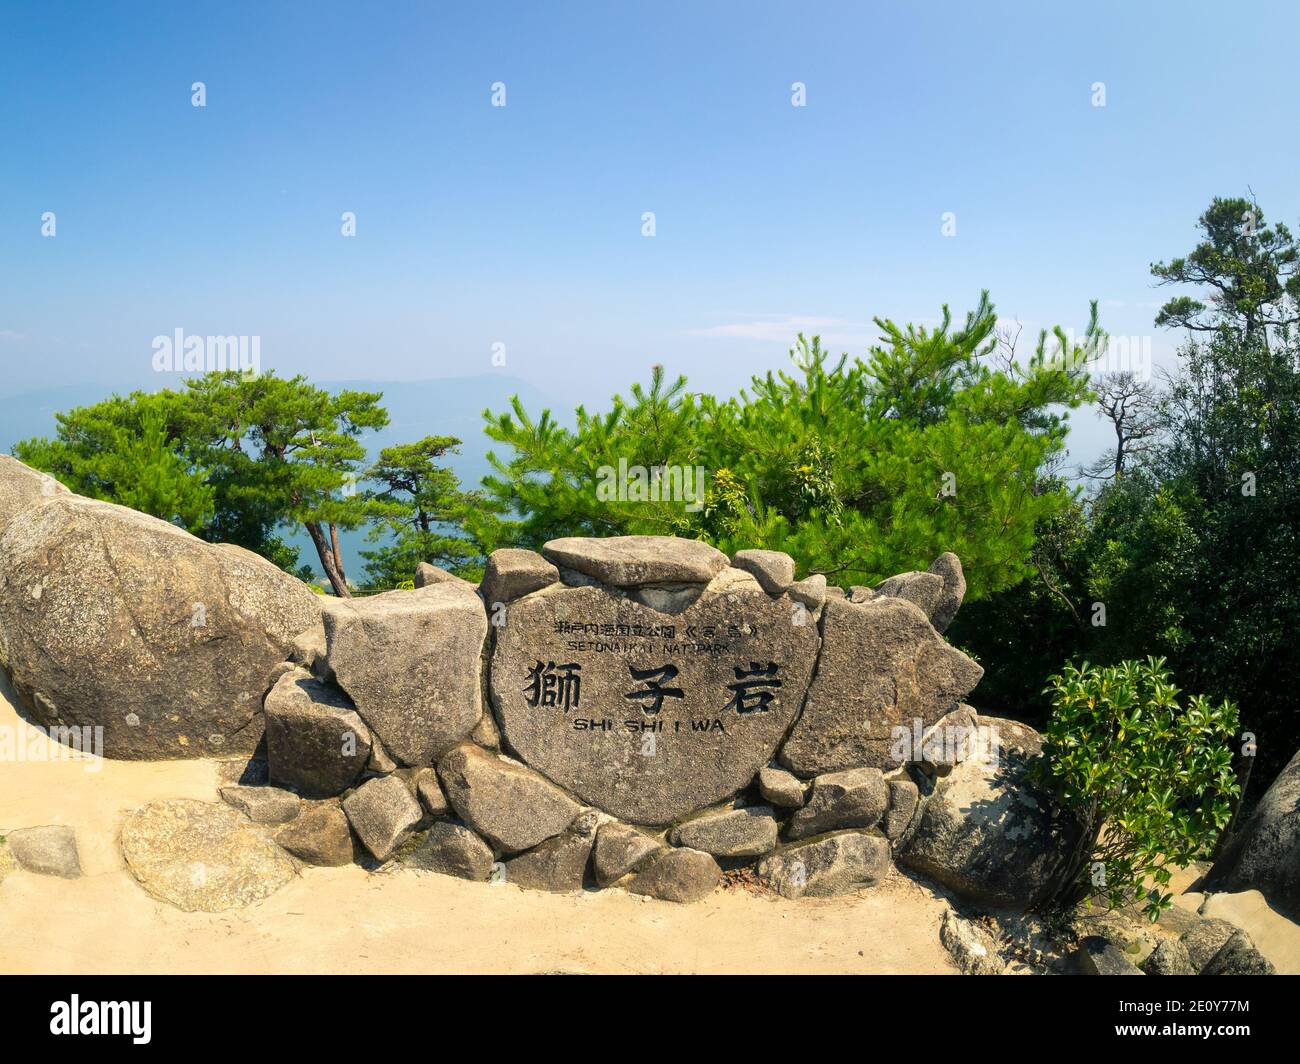 Un marcatore per l'Osservatorio Shishiiiiwa e il Parco Nazionale di Setonaikai sul Monte Misen, Isola di Miyajima (Itsukushima), Giappone. Foto Stock